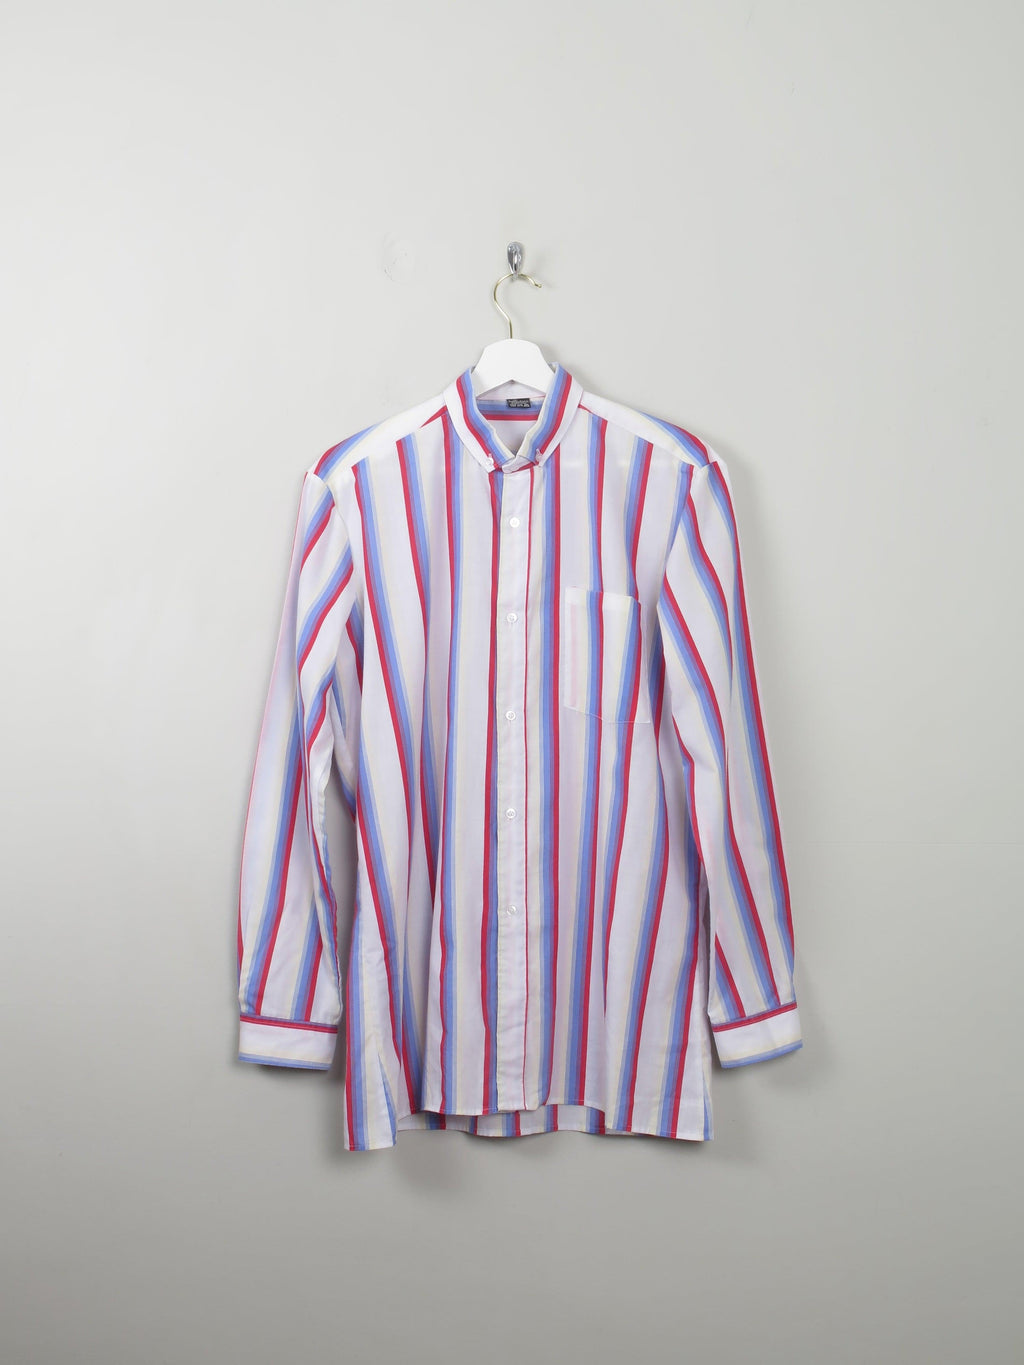 Men's Vintage Striped Shirt S/M - The Harlequin